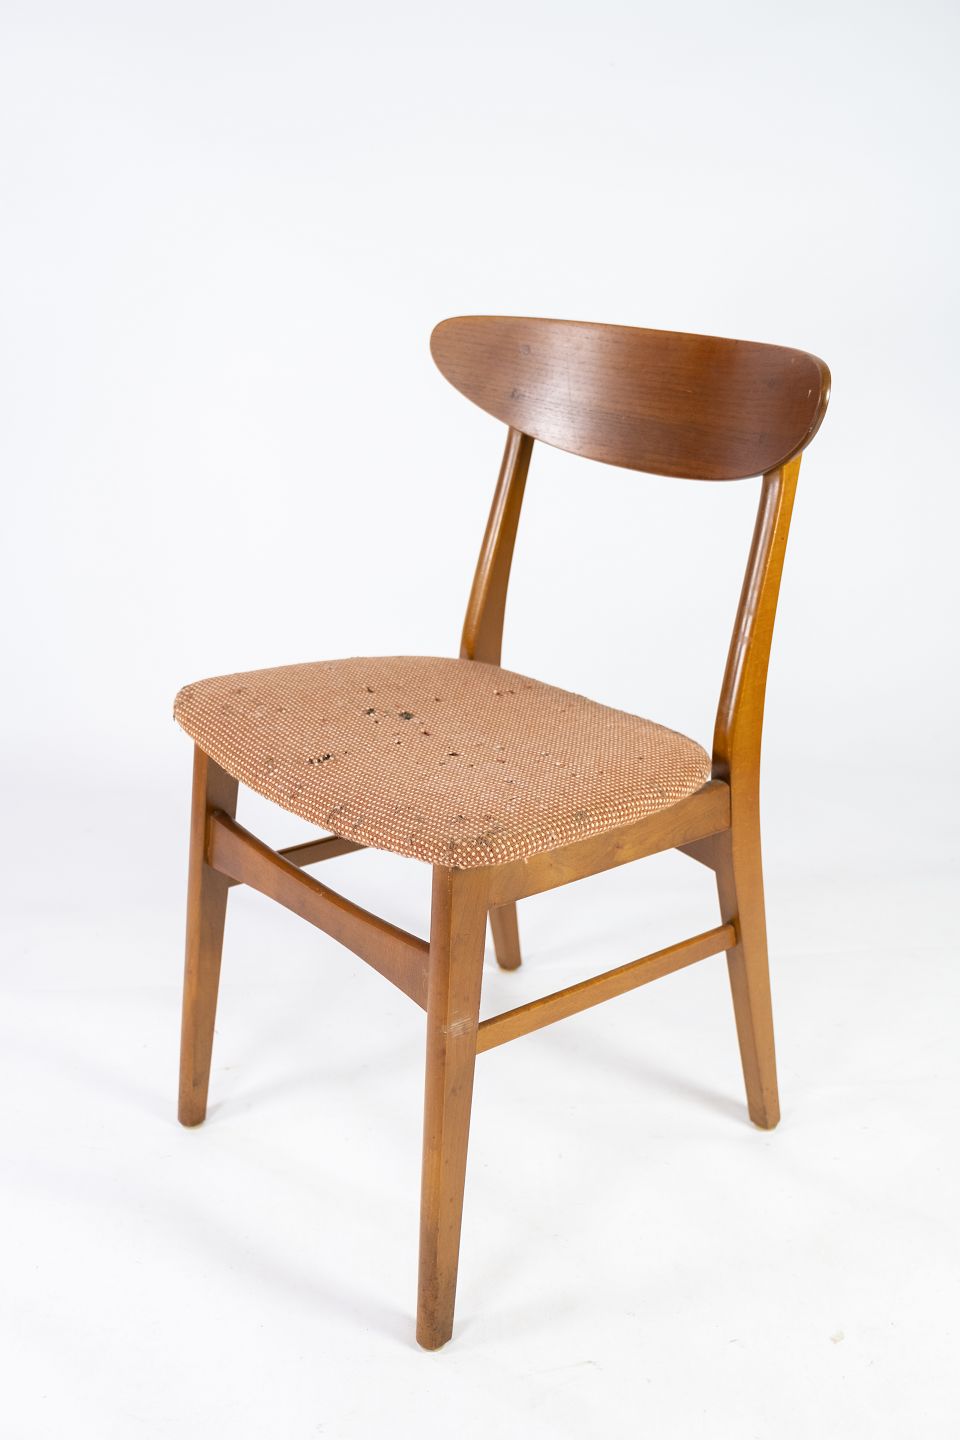 Vedrørende Størrelse Måske Spisestuestol i teak, model 210, af Farstrup møbler fra 1960erne. * 5000m2  udsti - Osted Antik & Design